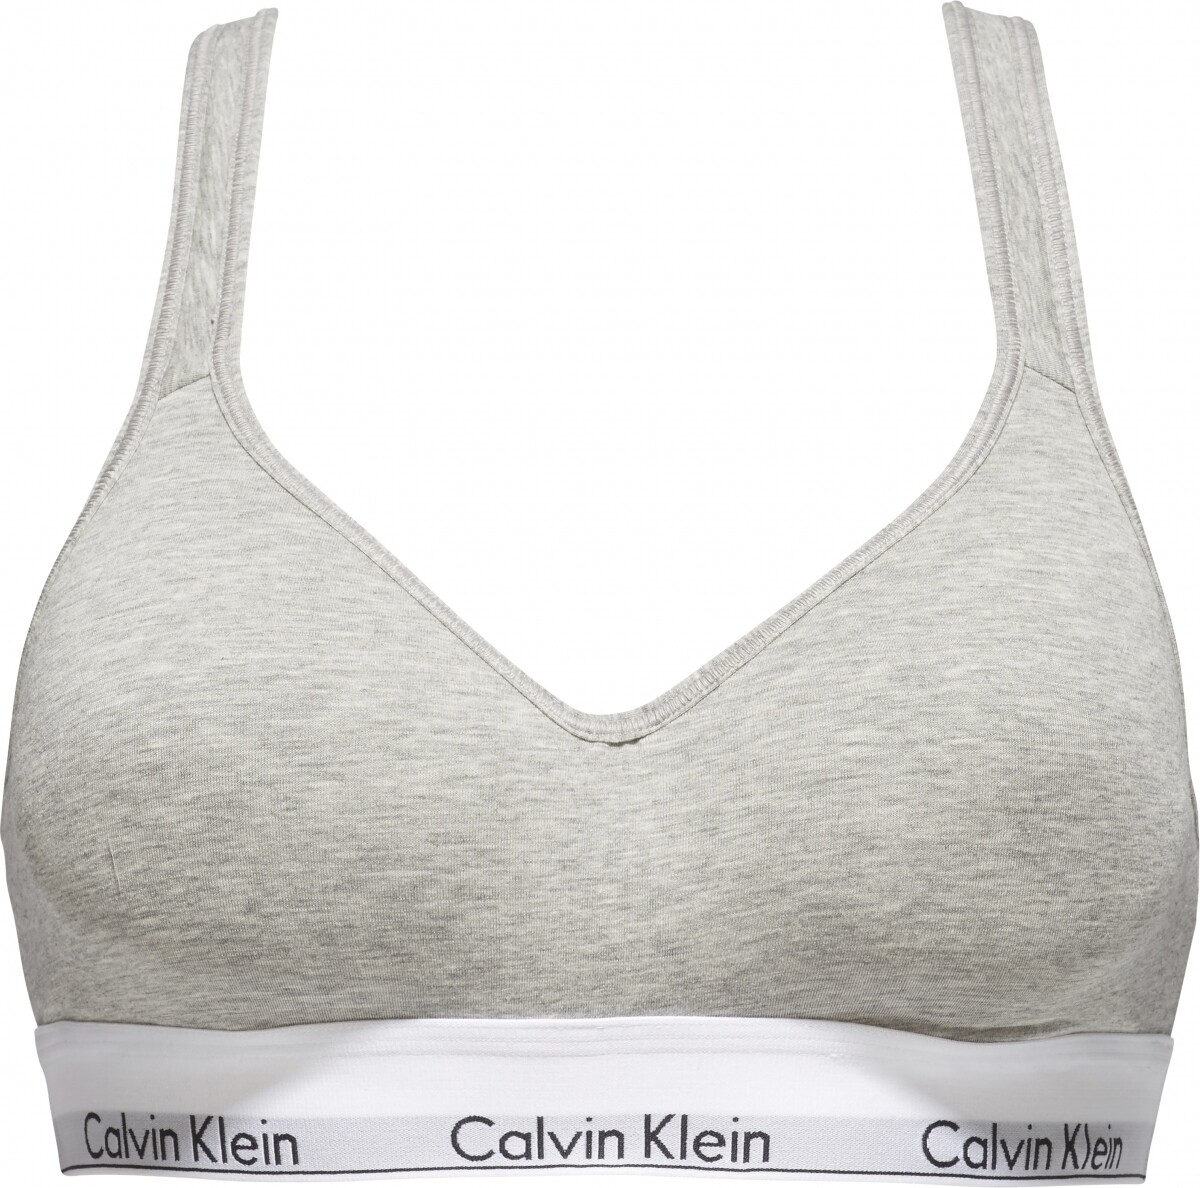 Calvin Klein bralette Modern Cotton, Size: S